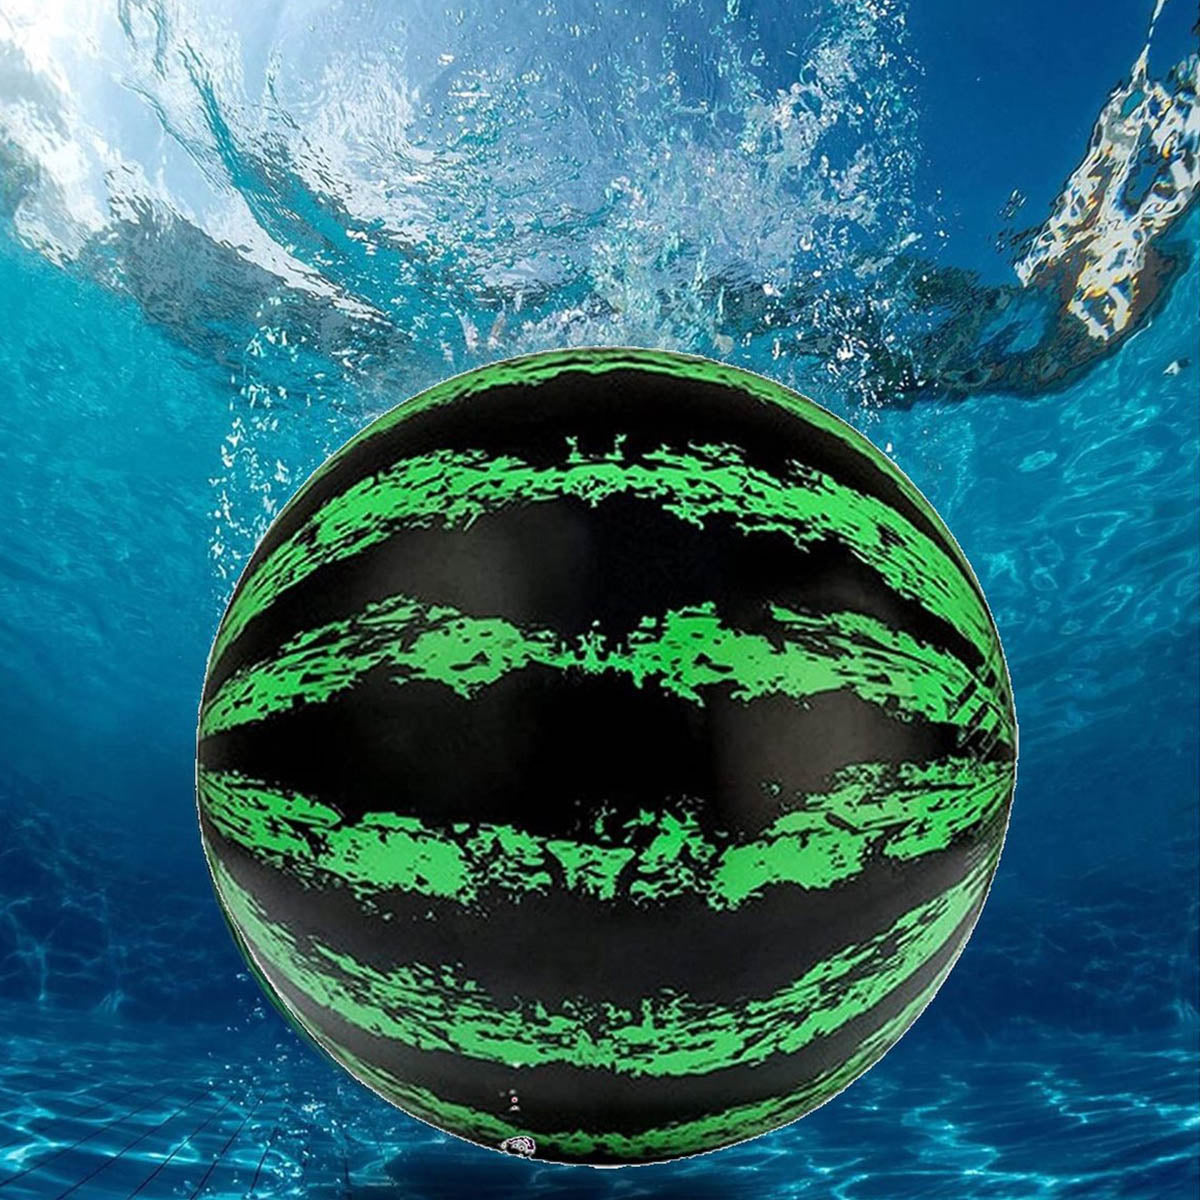 Ariko robuster Unterwasserball XXL | Unter Wasserball | Zum Befüllen mit Wasser oder Luft | Wasserball | Inklusive Wasserfüller | 22,8cm | Grün Schwarz